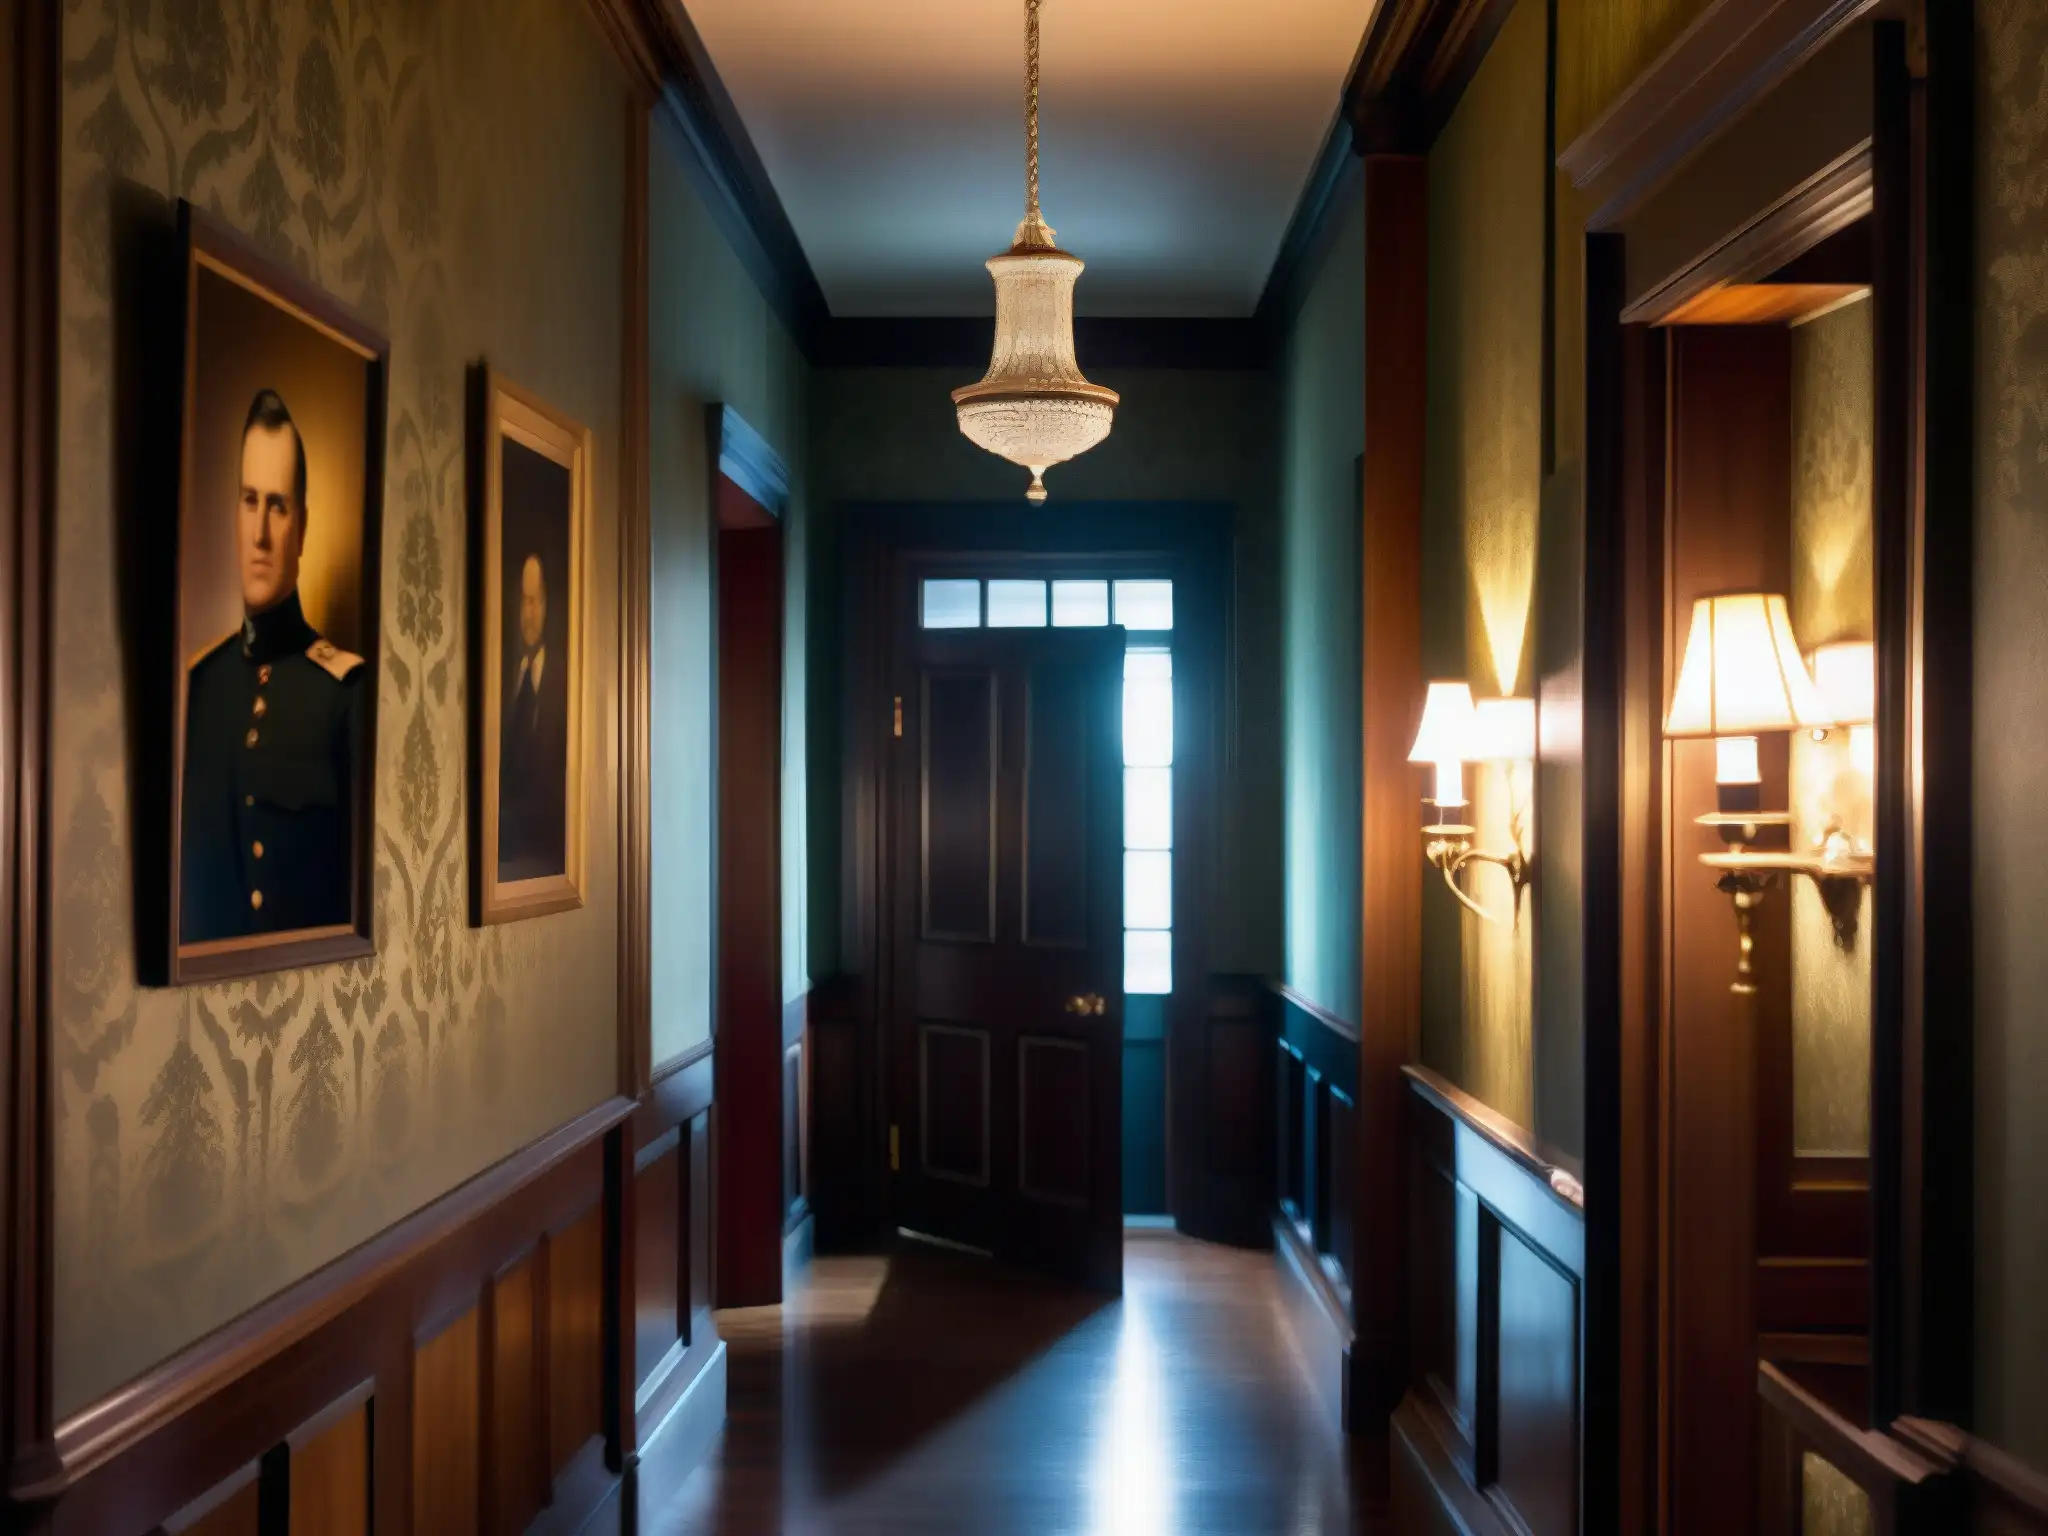 Un pasillo misterioso en una mansión colonial con el retrato del Fantasma del Británico en la Casa Roja